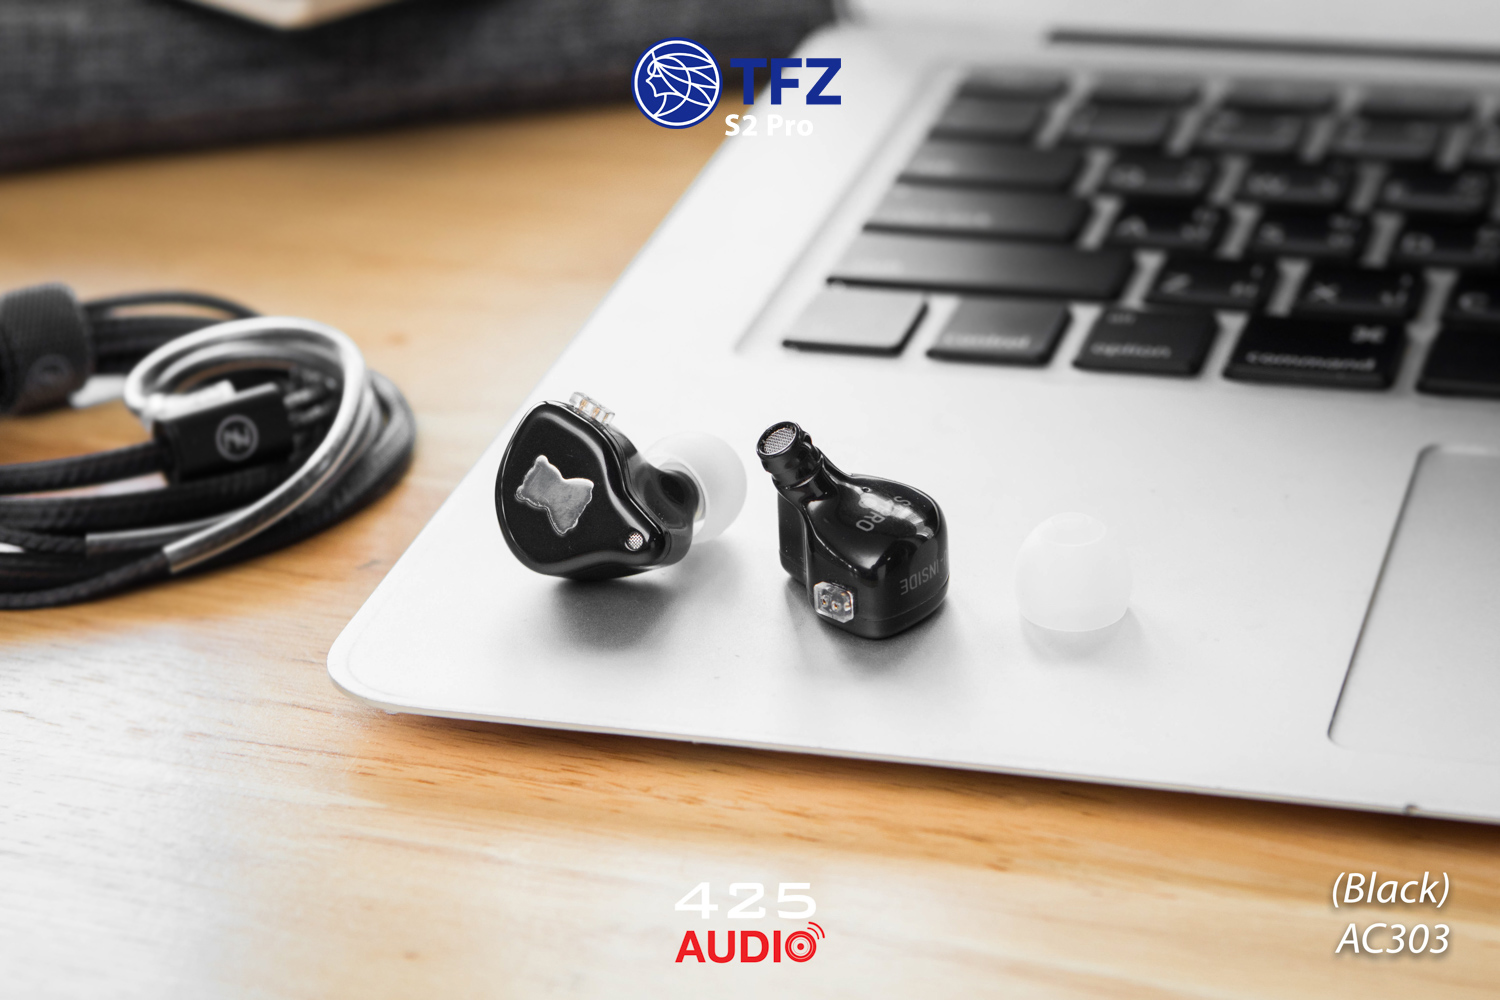 TFZ,s2 pro,หูฟัง,In-Ear,monitor,แจ๊ค 3.5 มม,เบสหนัก,เสียงดีมาก,พรีเมี่ยม